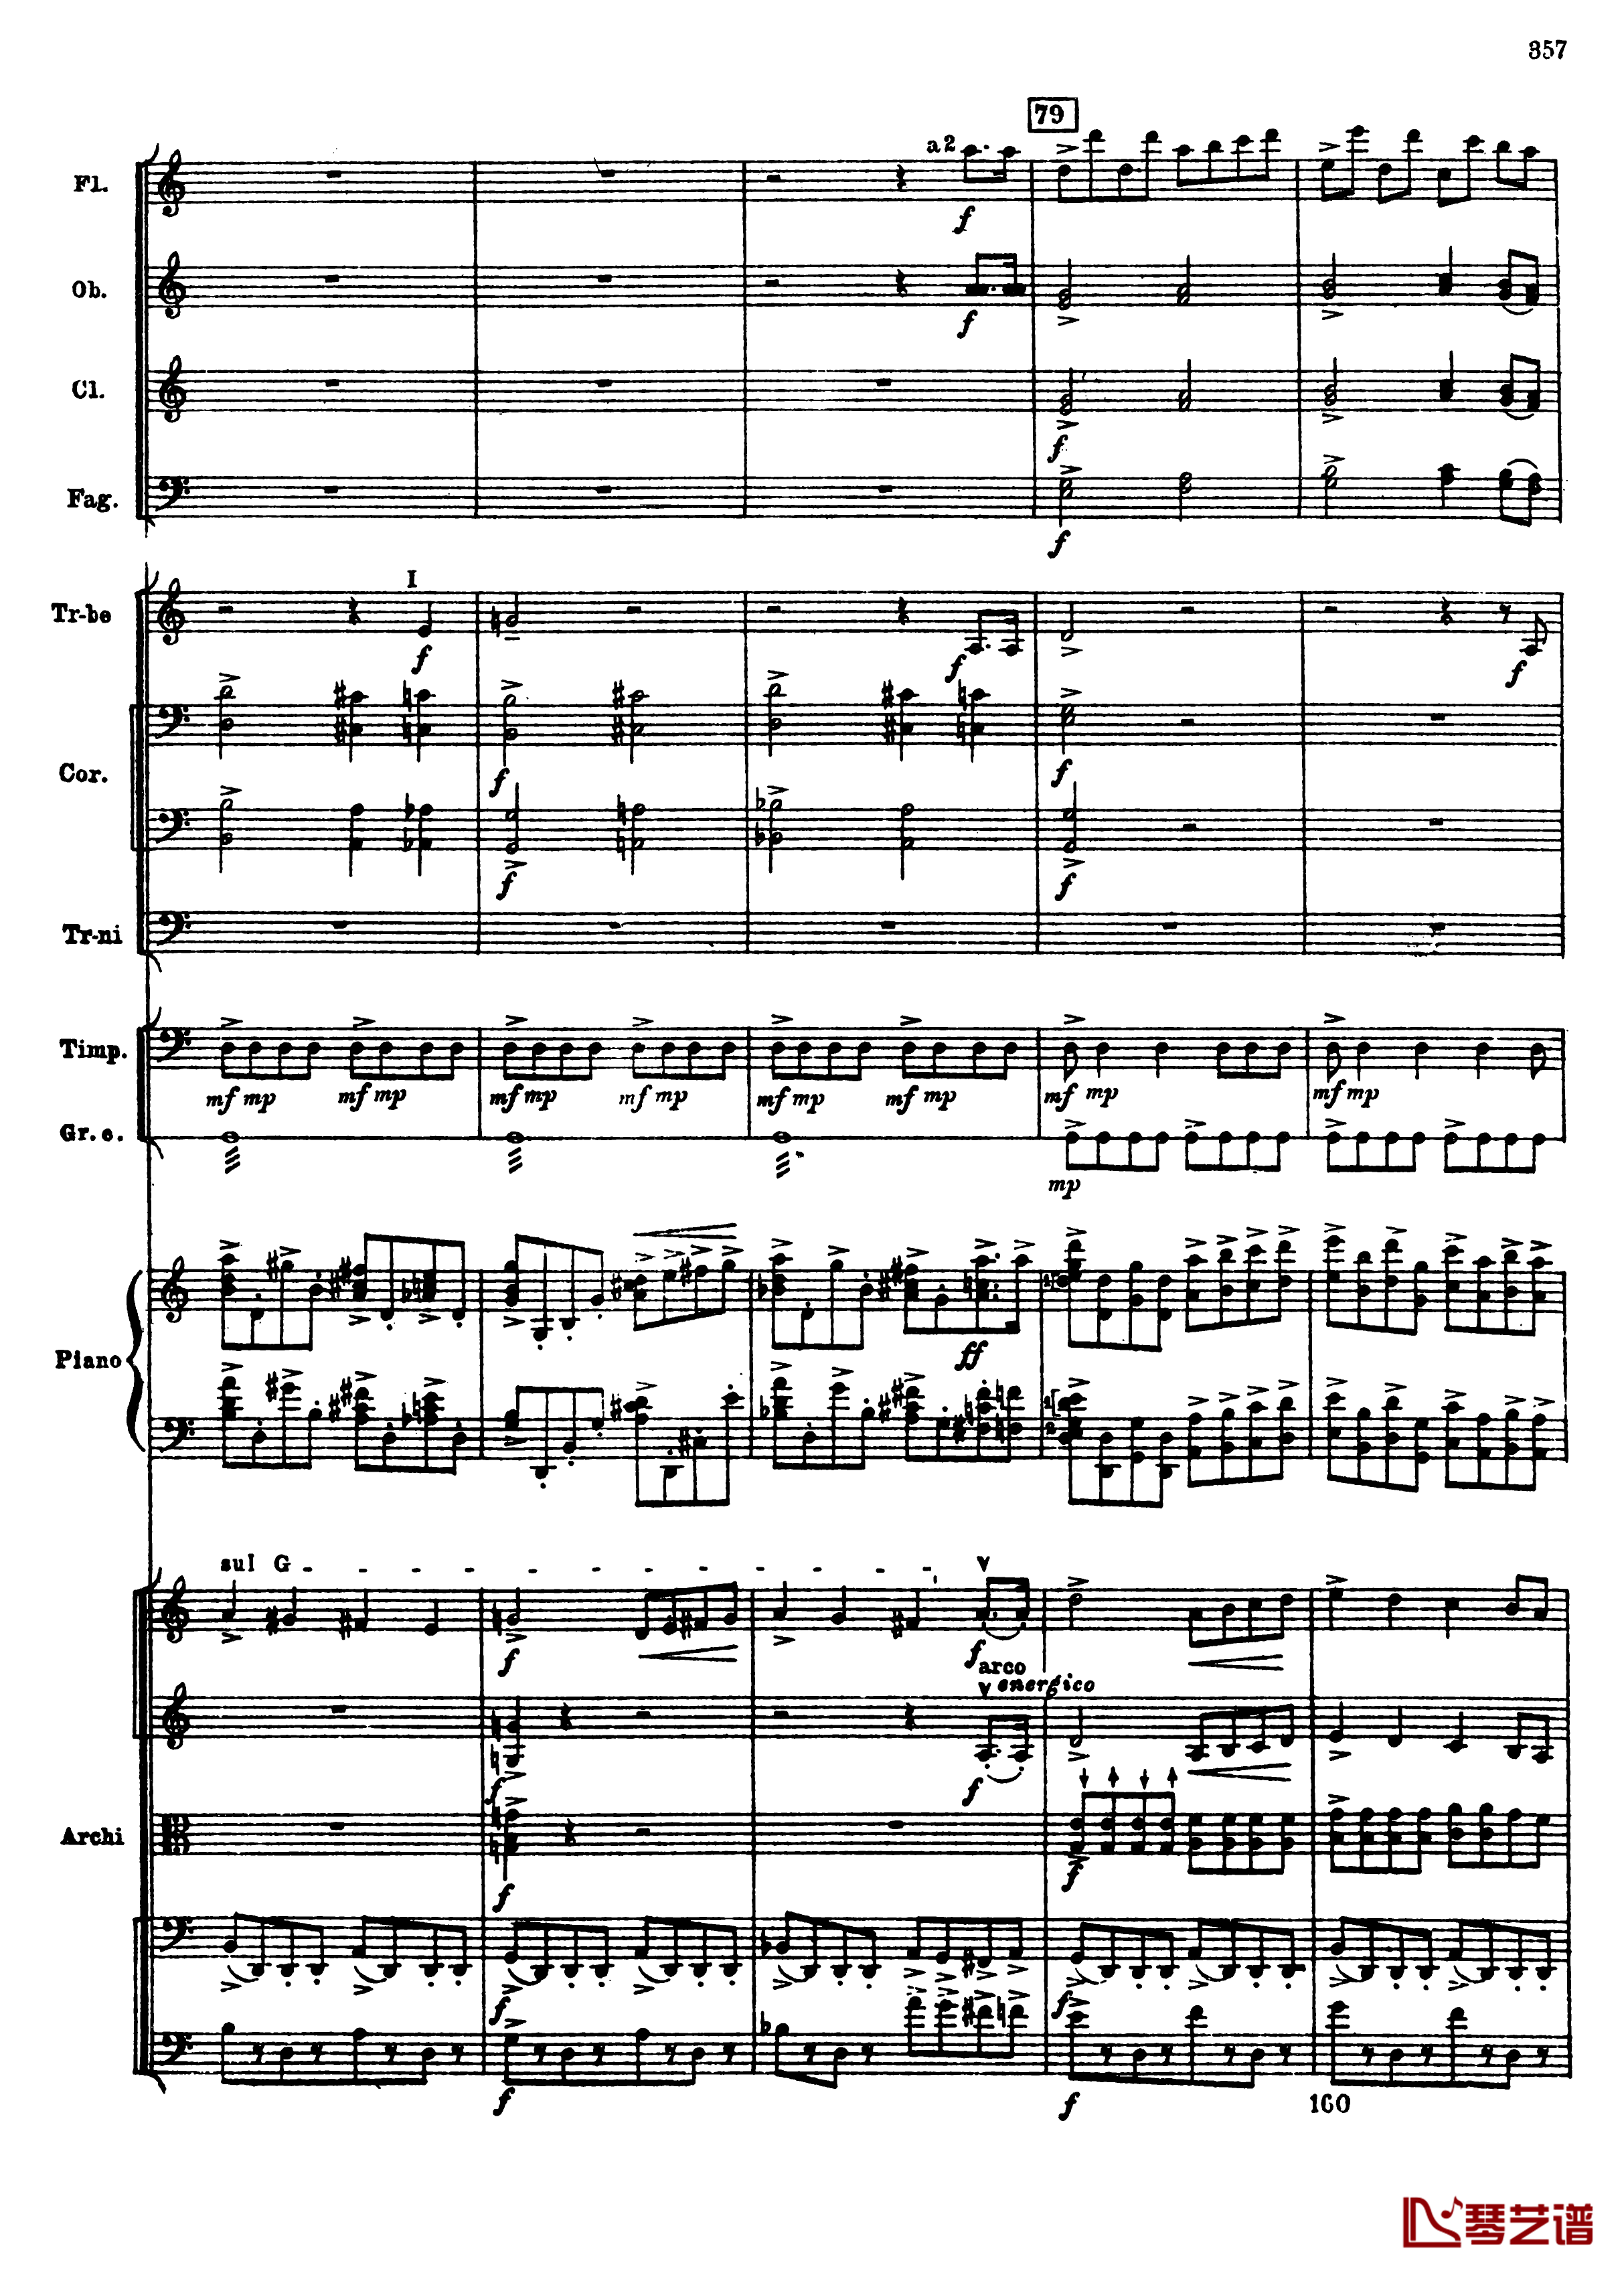 普罗科菲耶夫第三钢琴协奏曲钢琴谱-总谱-普罗科非耶夫89